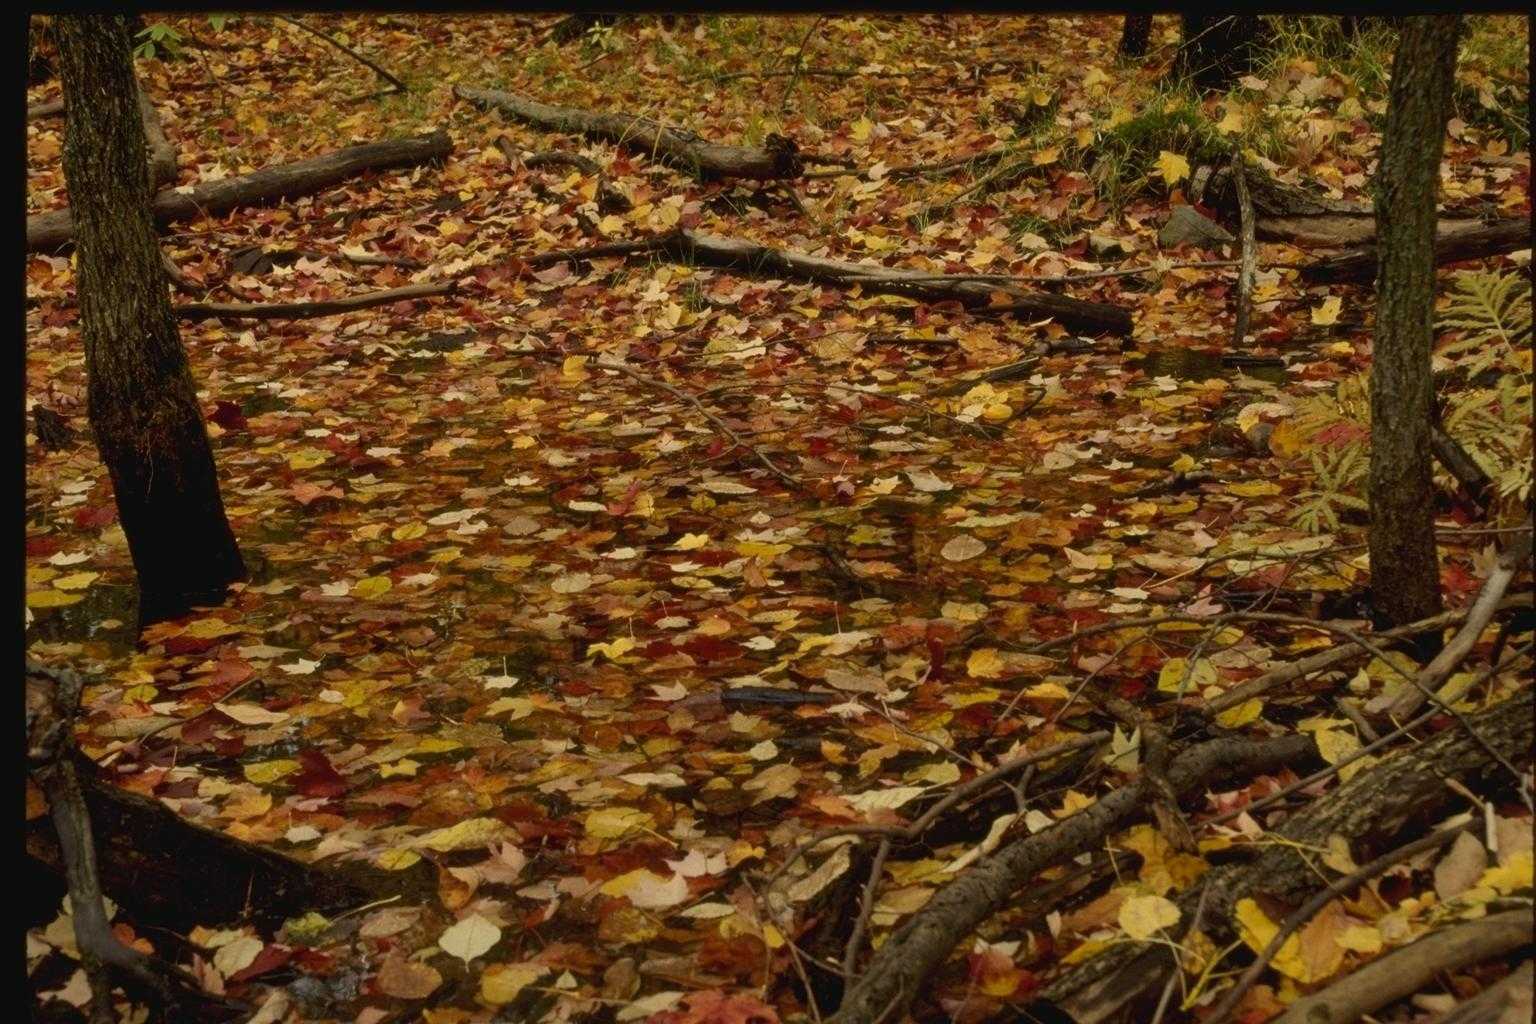 посмотрите на фотографию опавших осенних листьев